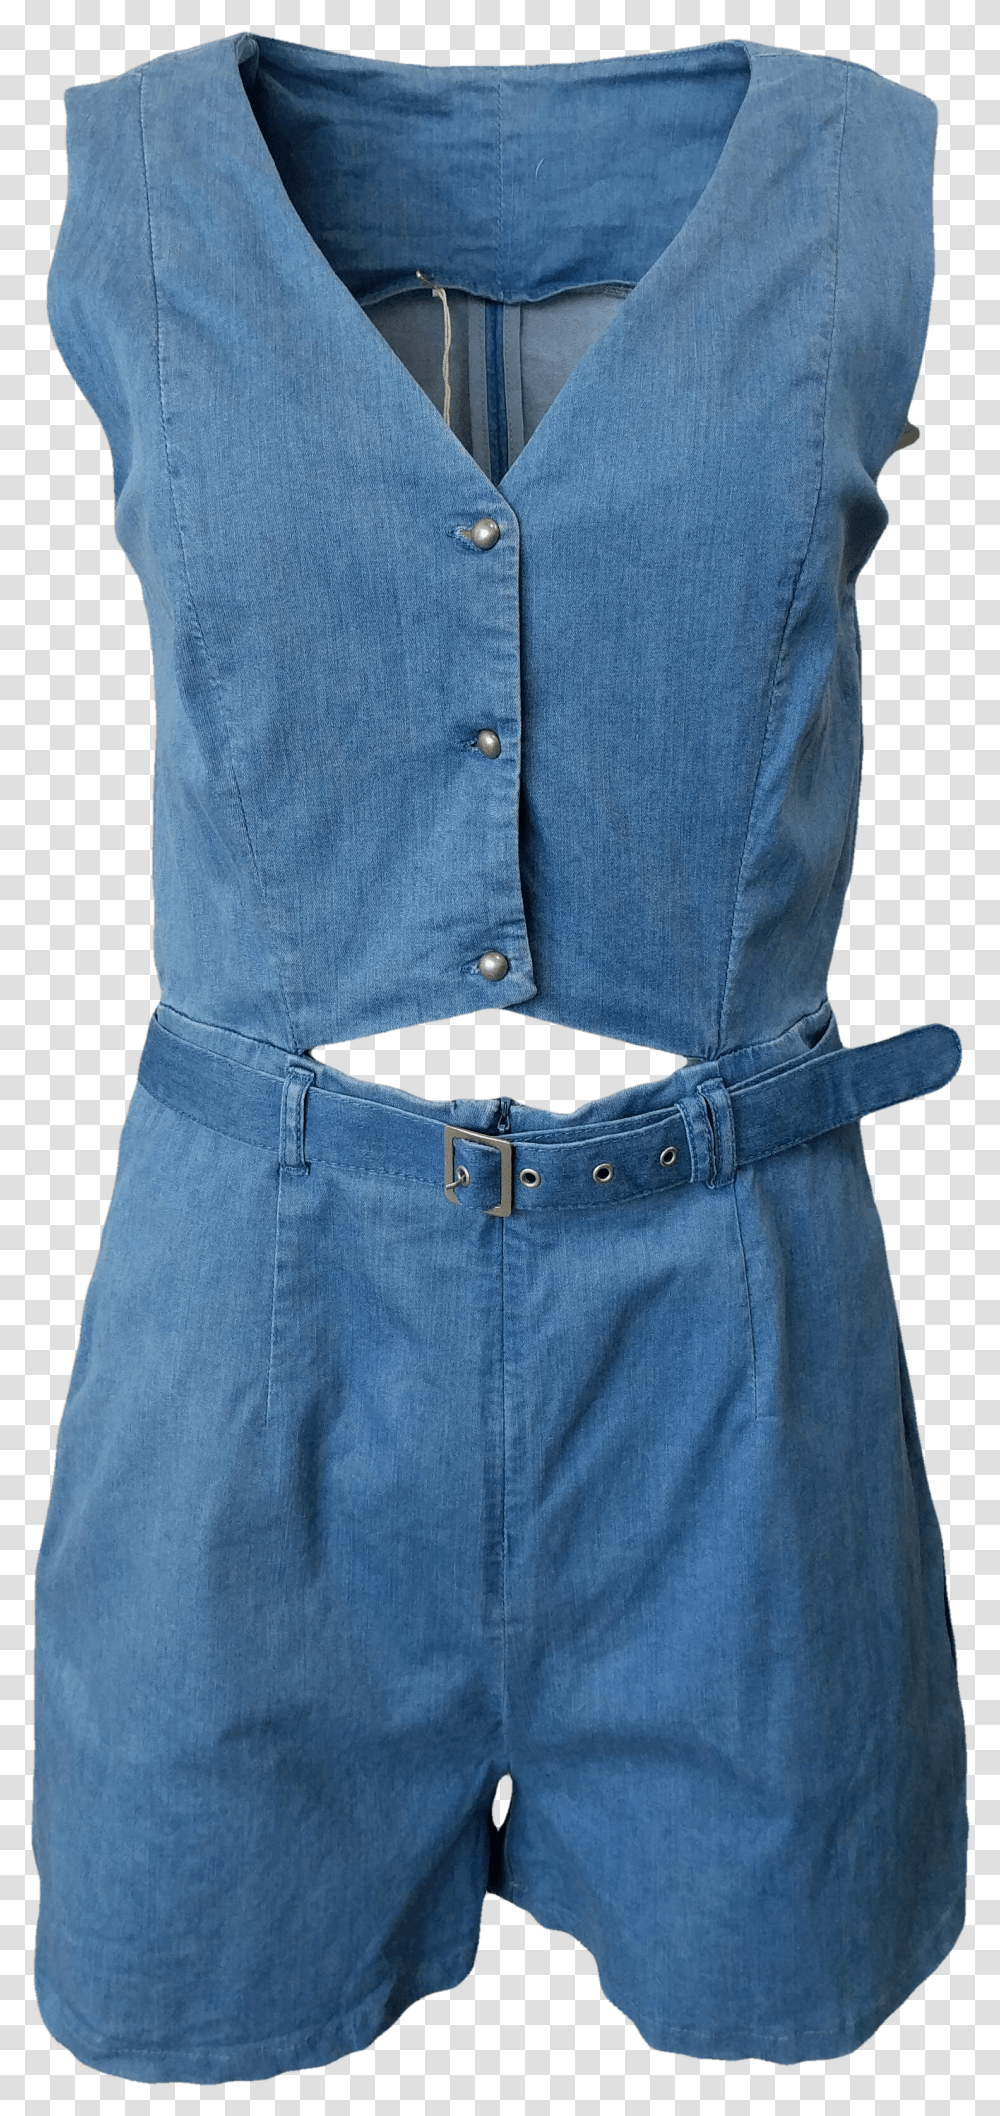 One Piece Garment, Apparel, Pants, Jeans Transparent Png